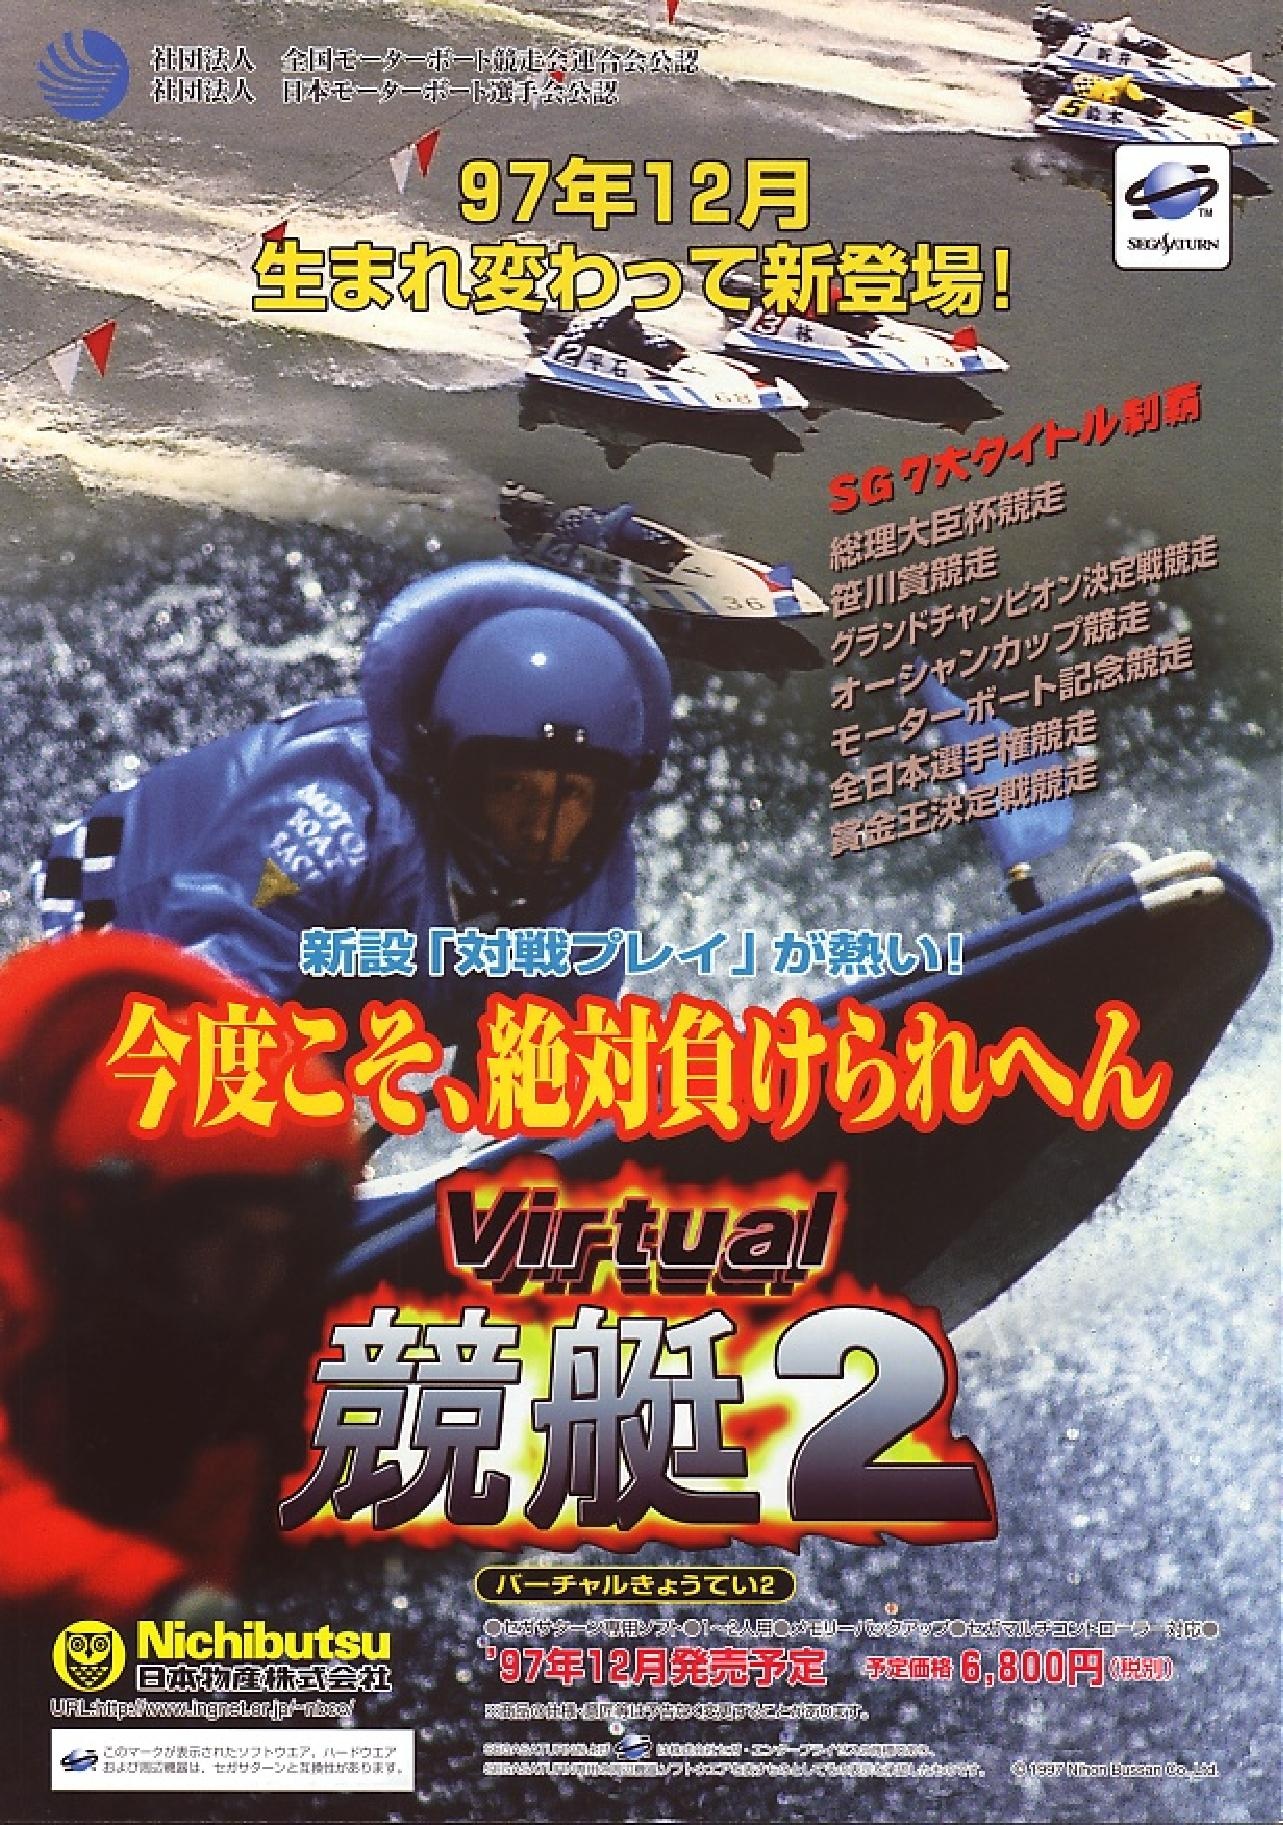 VirtualKyoutei2 Saturn JP Flyer.pdf